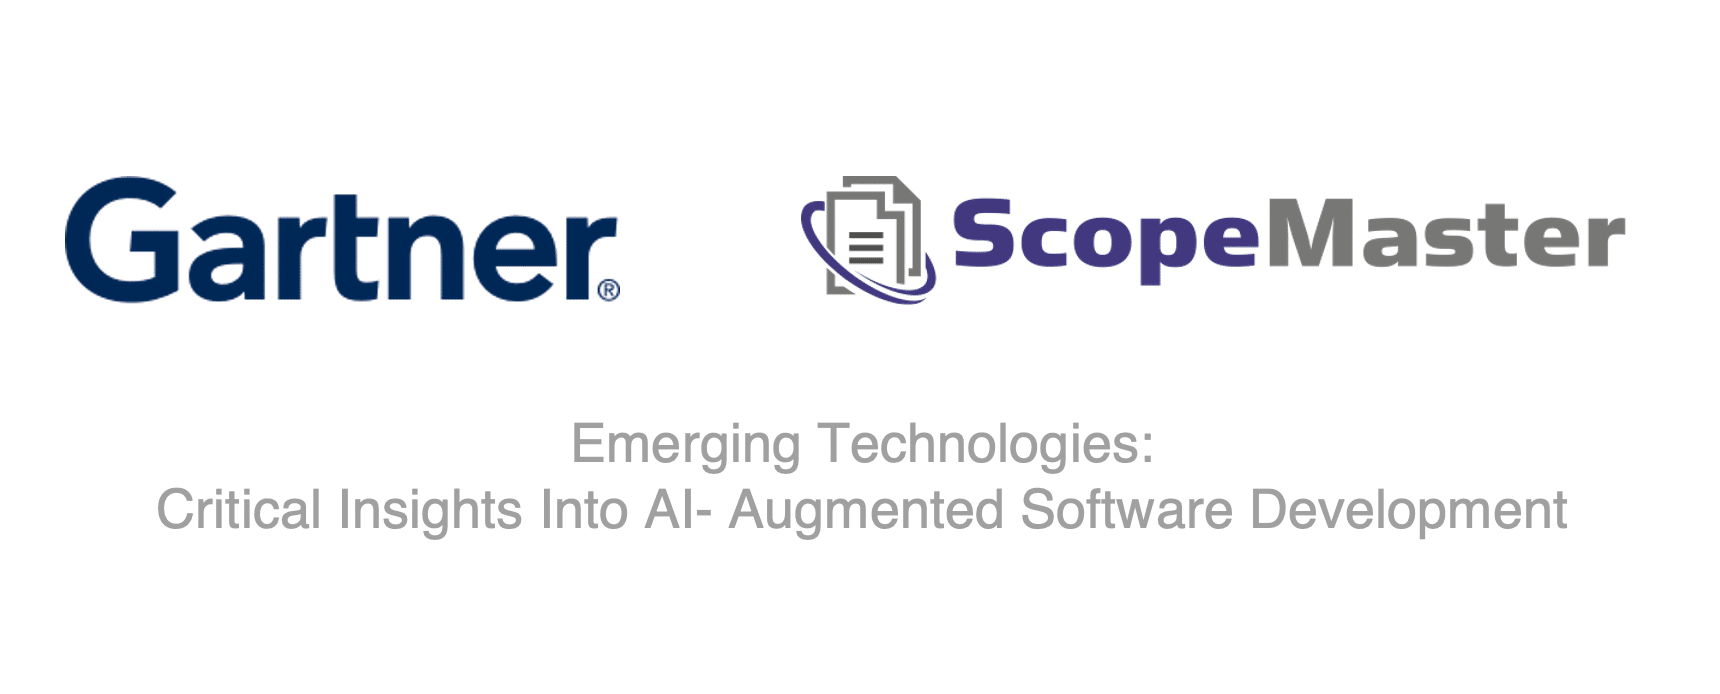 Gartner présente ScopeMaster dans le développement de logiciels augmentés par l'IA